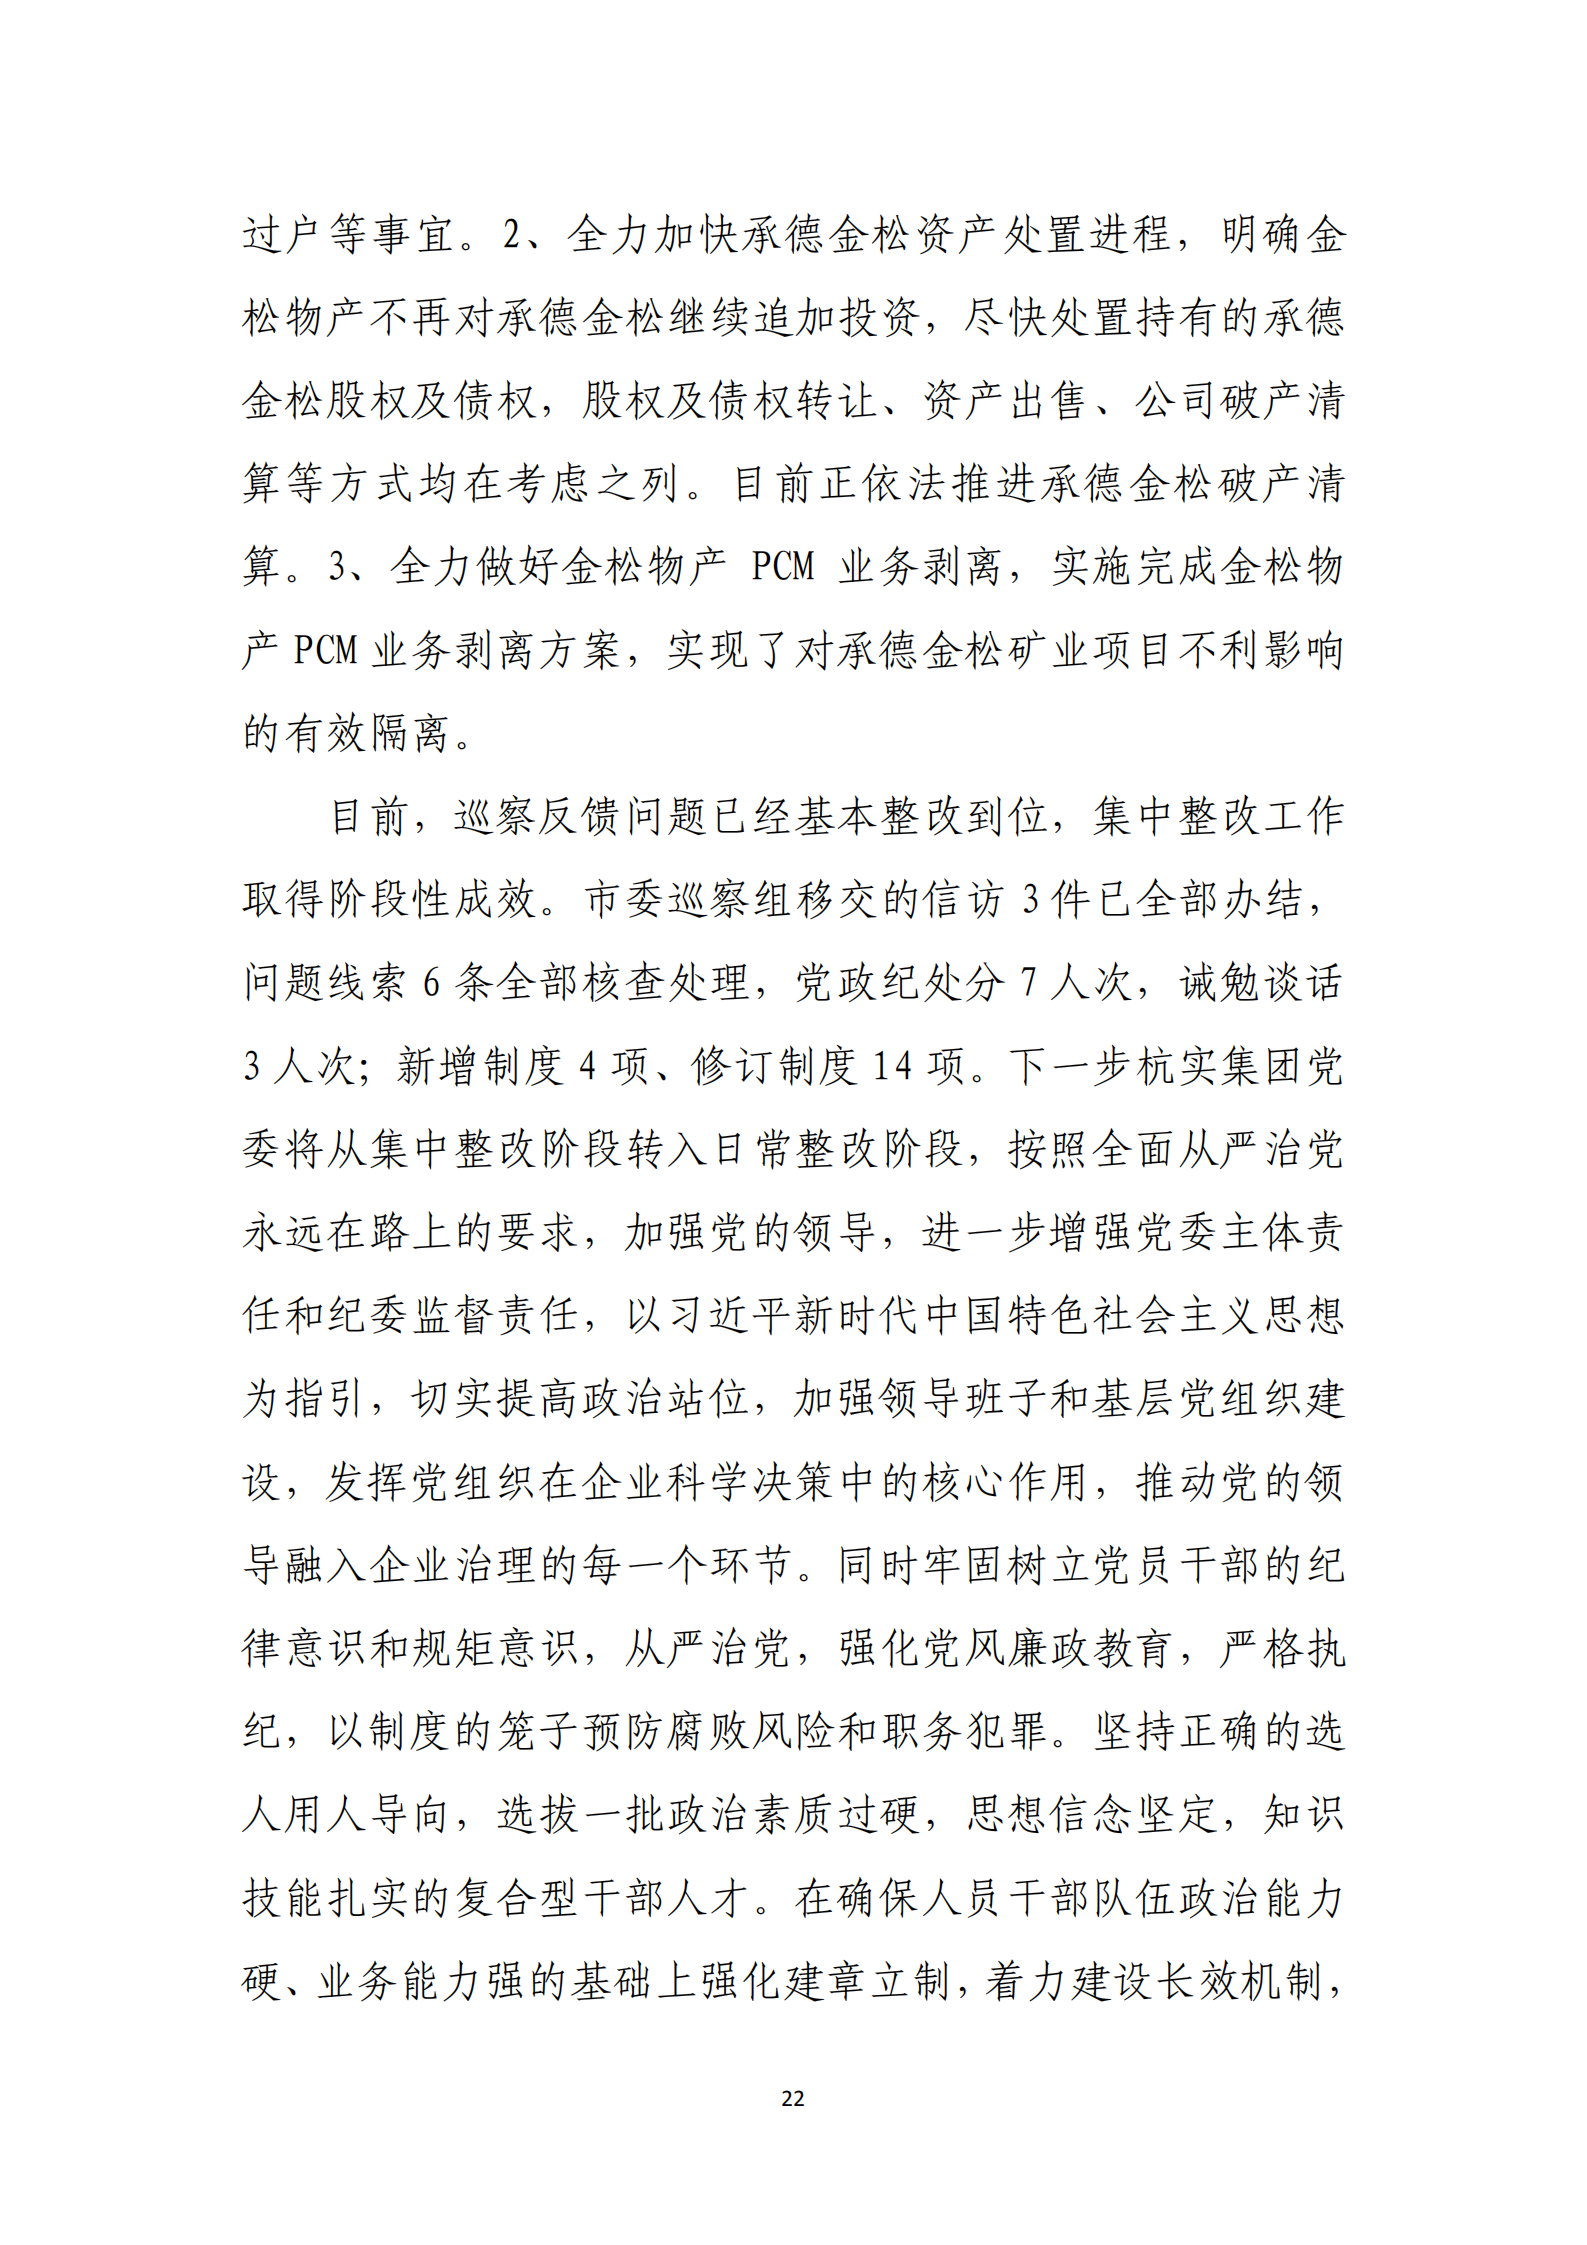 大阳城集团娱乐游戏党委关于巡察整改情况的通报_21.png